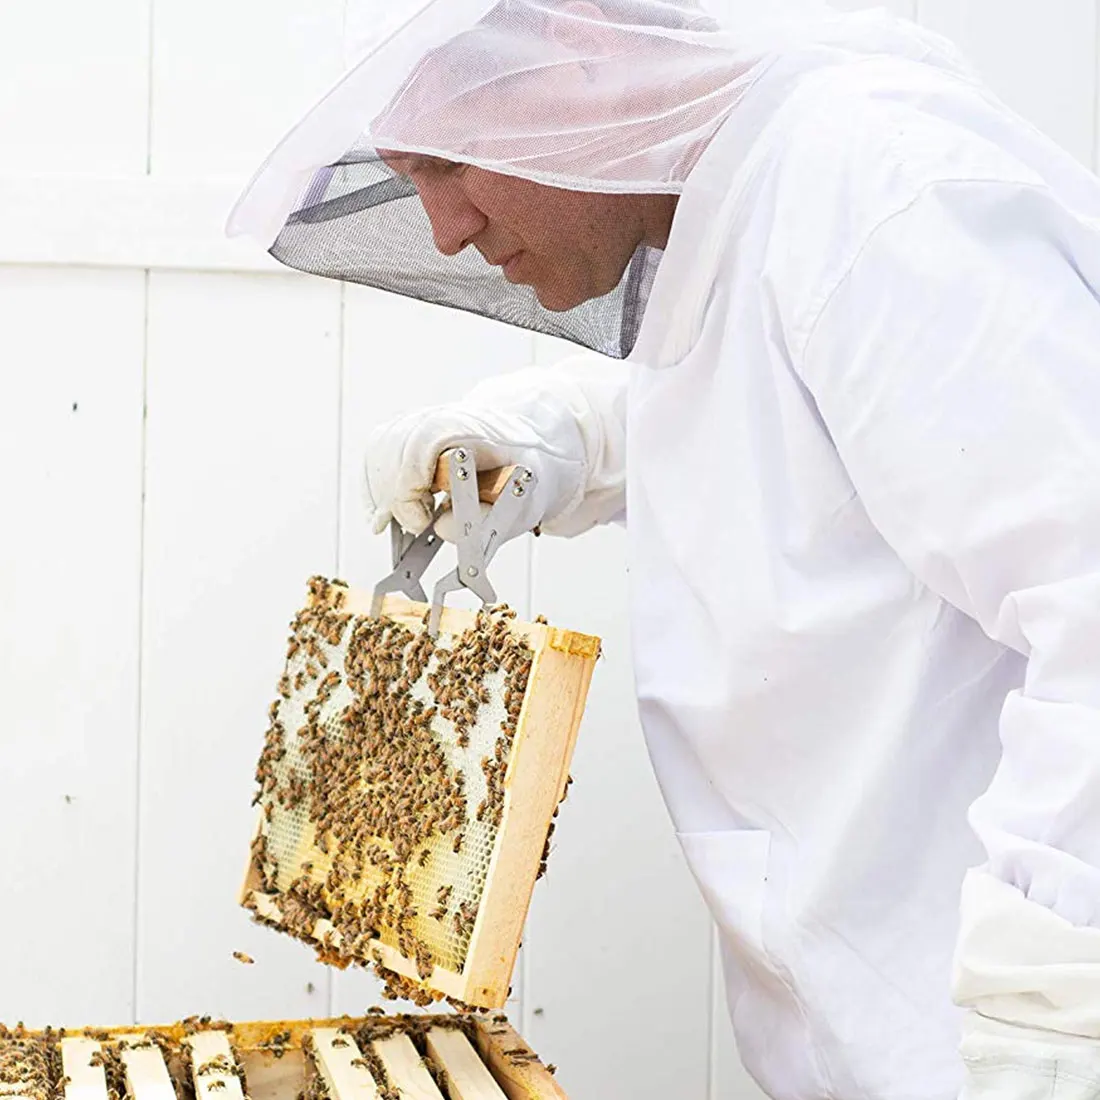 Товары для пчеловодства защита для Пчеловодство безопасный костюм пчеловода защита от укусов унисекс пчеловодческий защитные перчатки одежда для безопасности